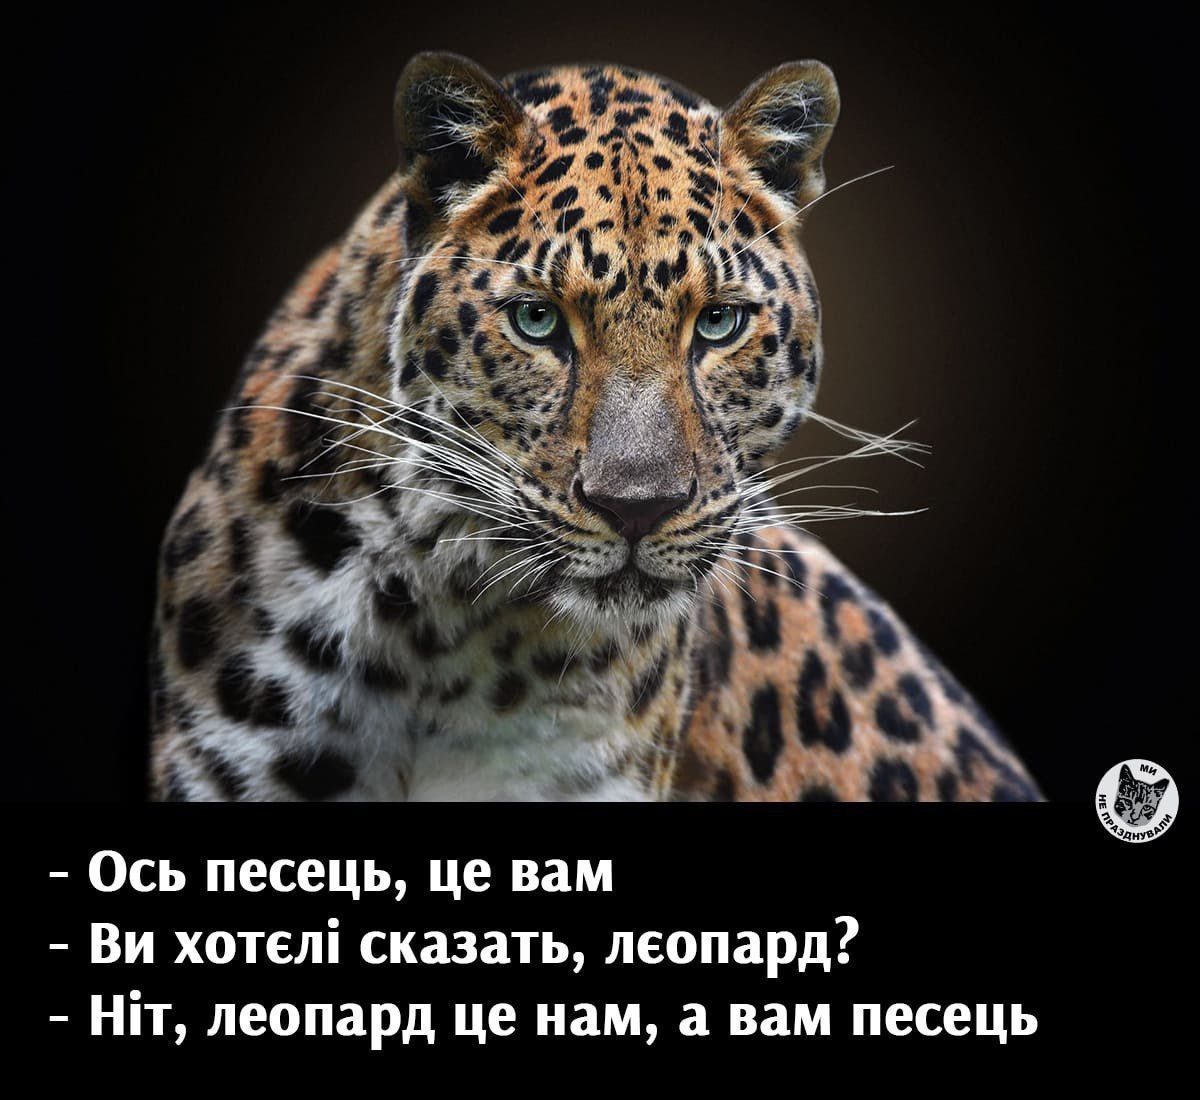 Мемы о леопардах заполонили Сеть из-за колебаний Германии по танкам Leopard (ФОТО)